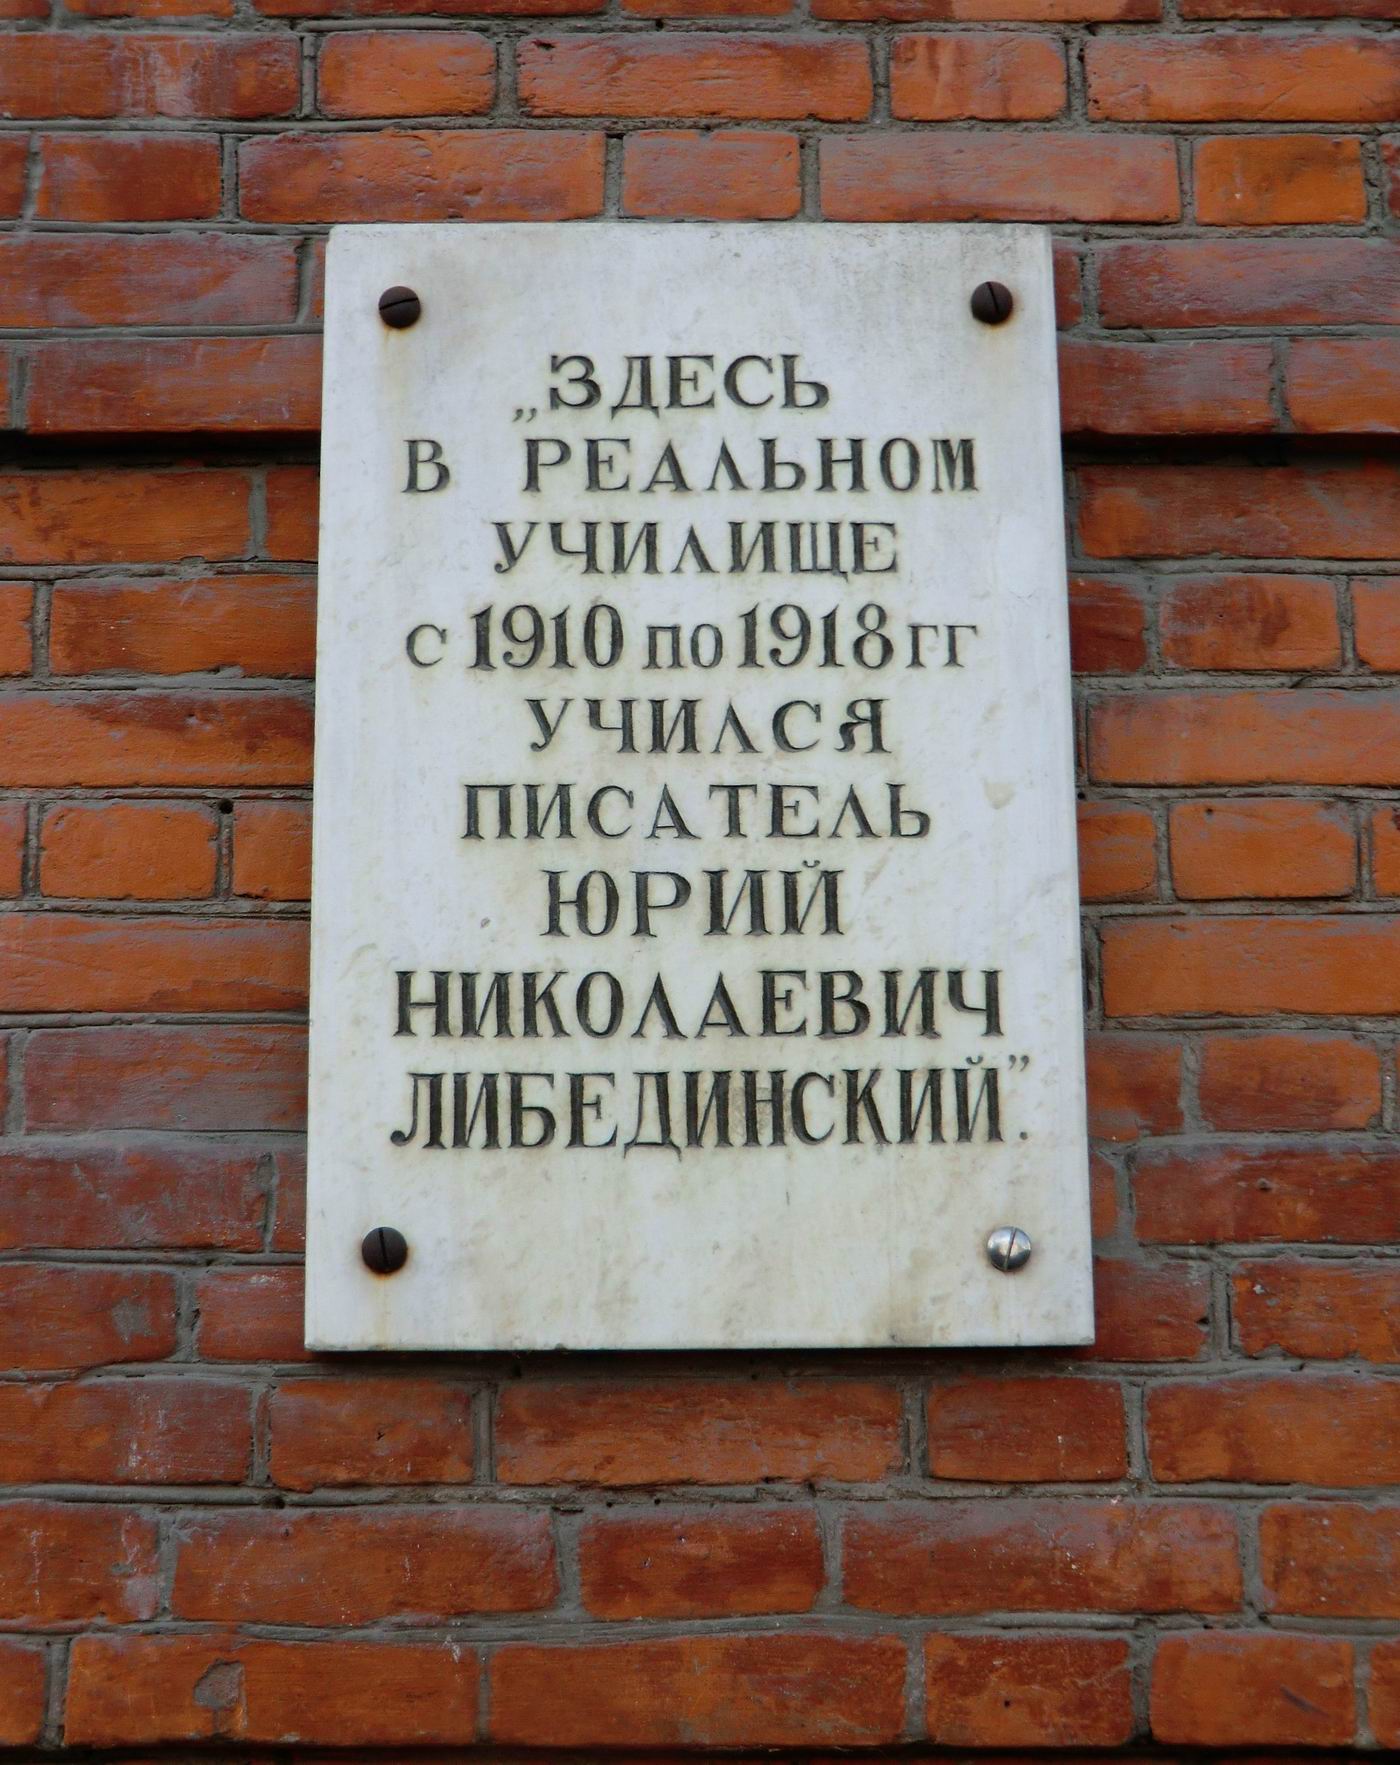 Мемориальная доска Либединскому Ю.Н. (1898–1959), в Челябинске, на улице Красная, дом 38.